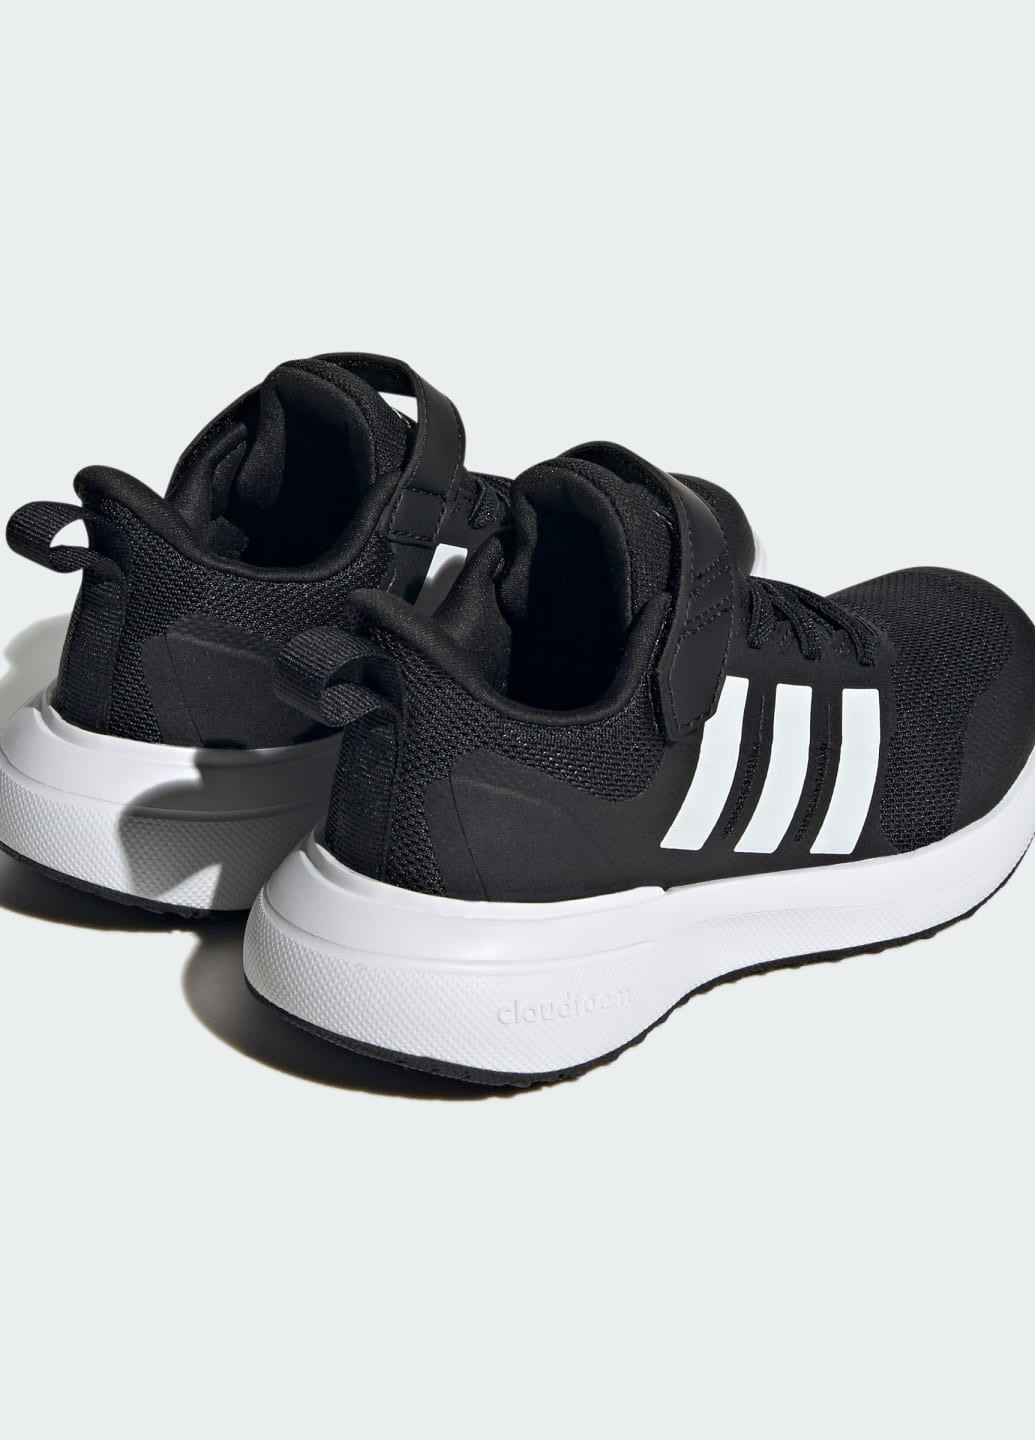 Черные всесезонные кроссовки fortarun 2.0 cloudfoam adidas